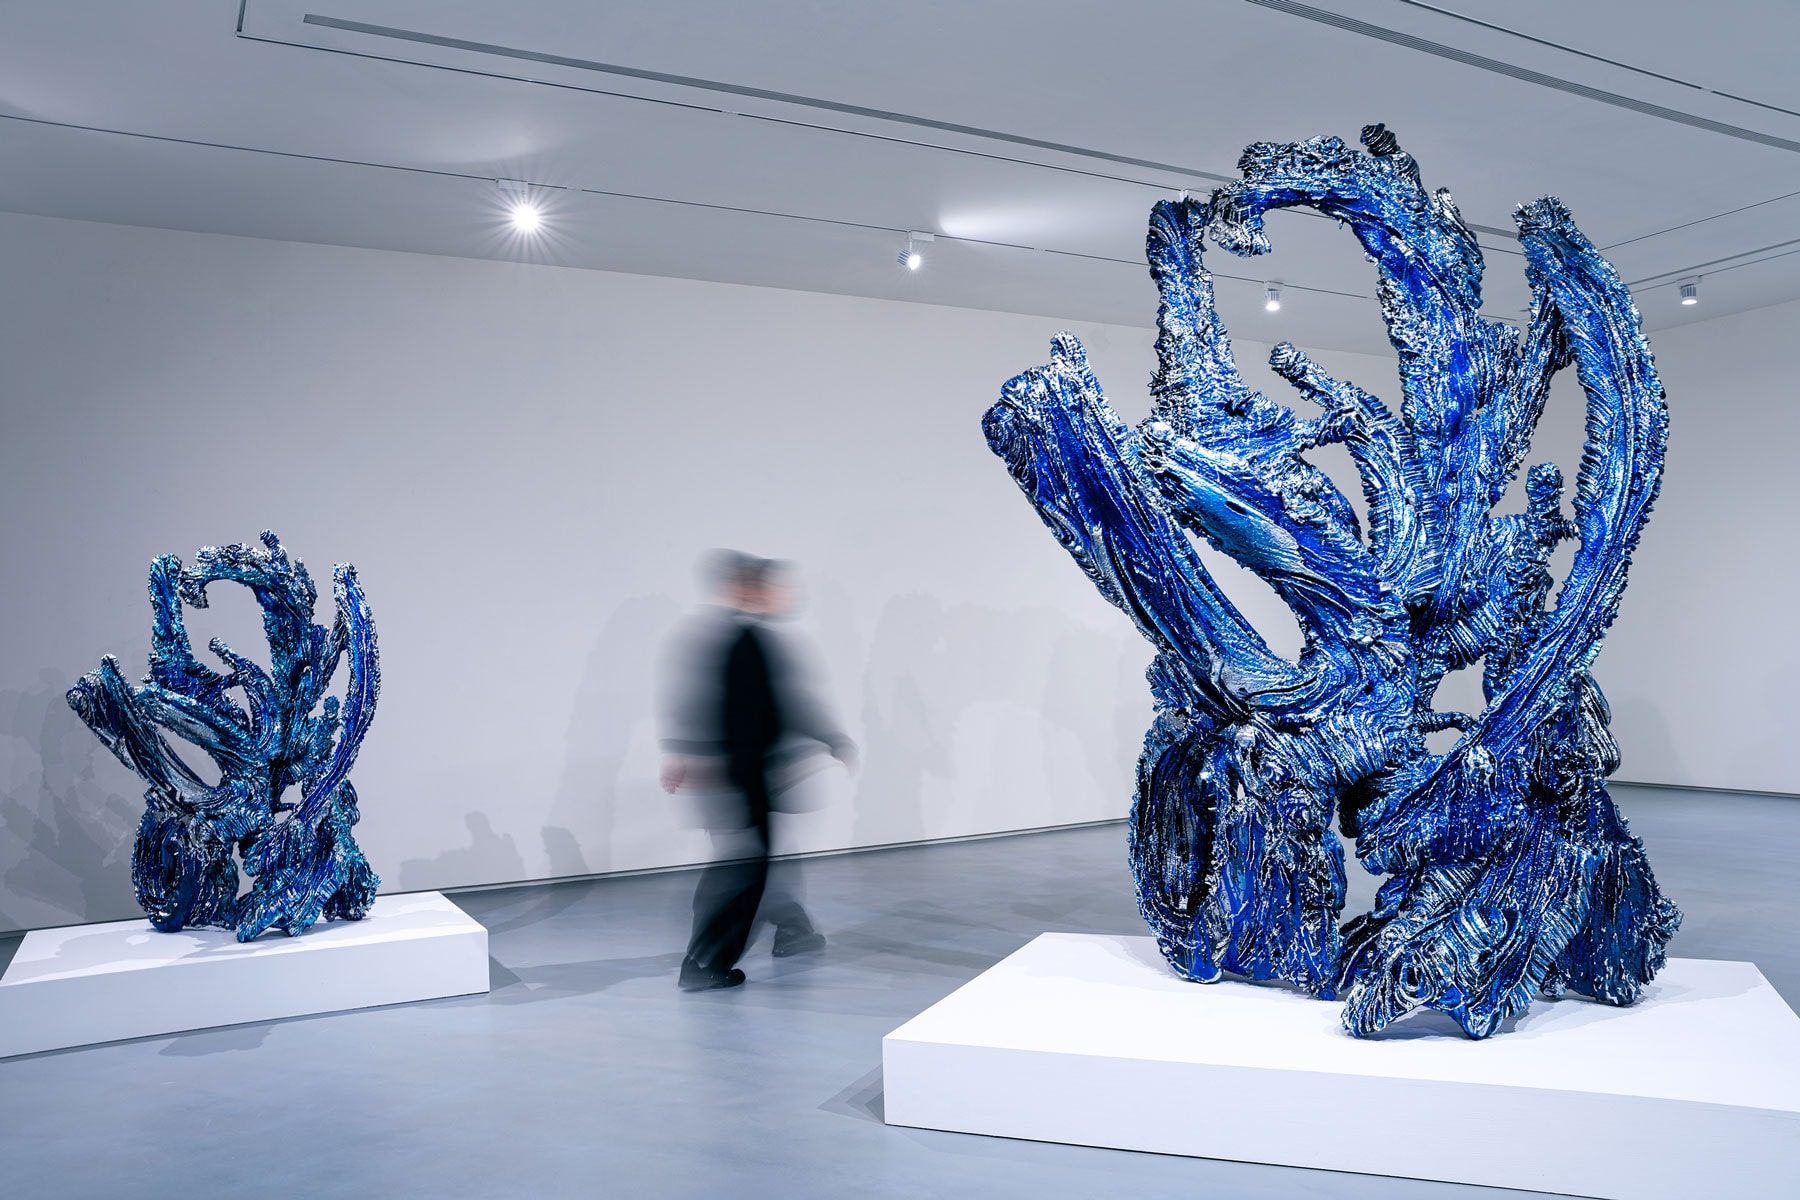 meguru yamaguchi exhibition artworks sculptures paintings